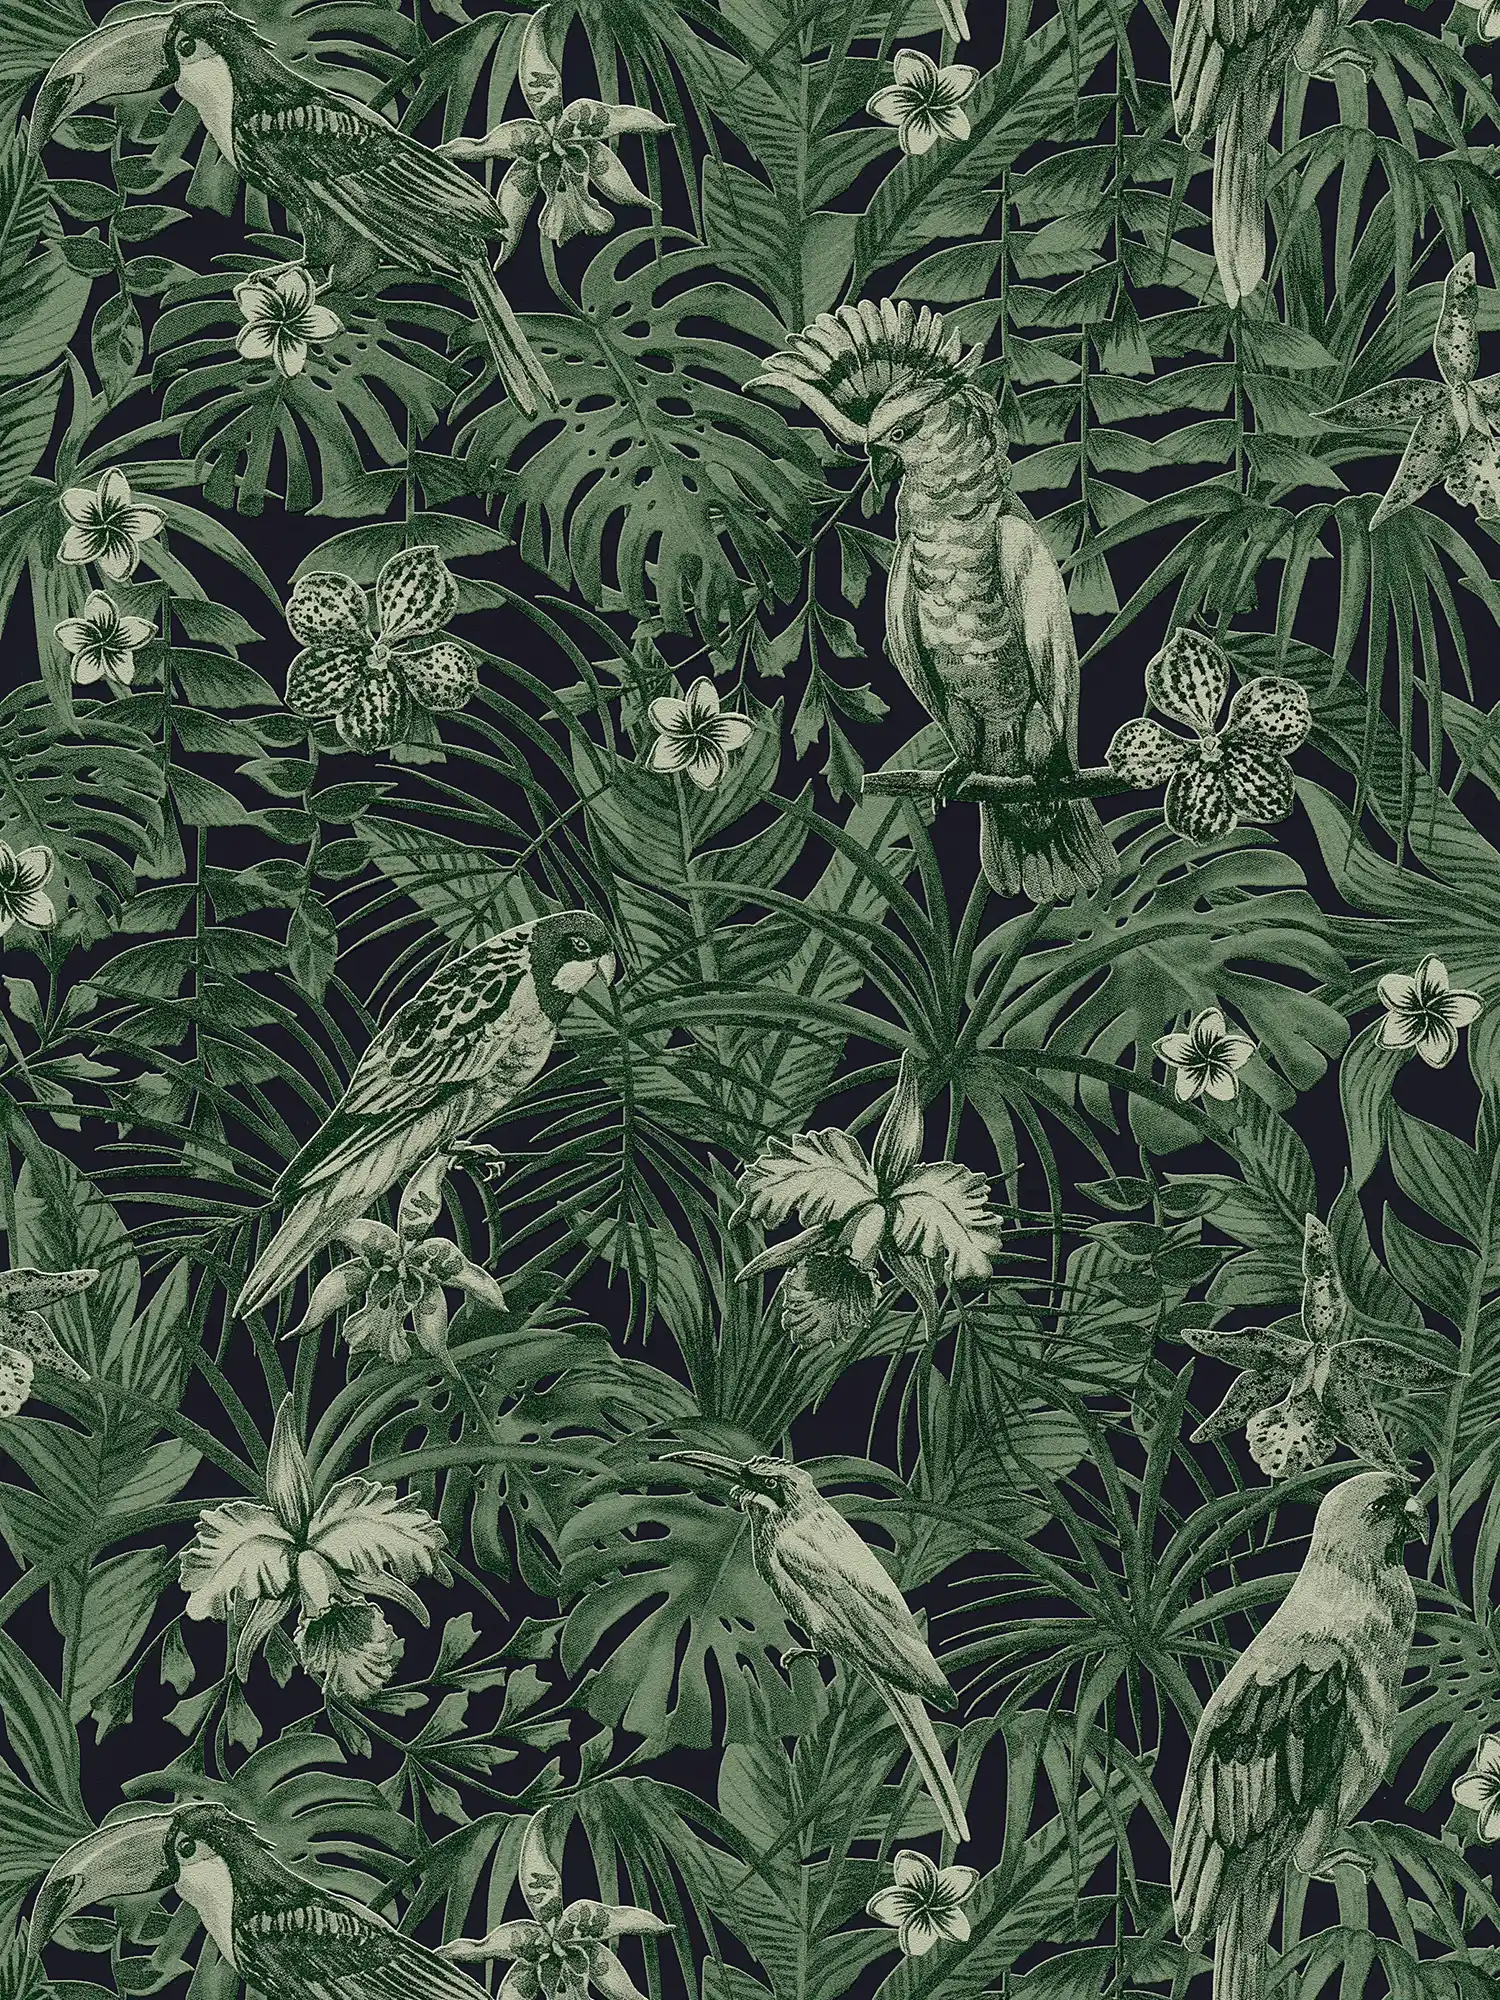 Papier peint oiseaux tropicaux & fleurs exotiques - vert, noir
